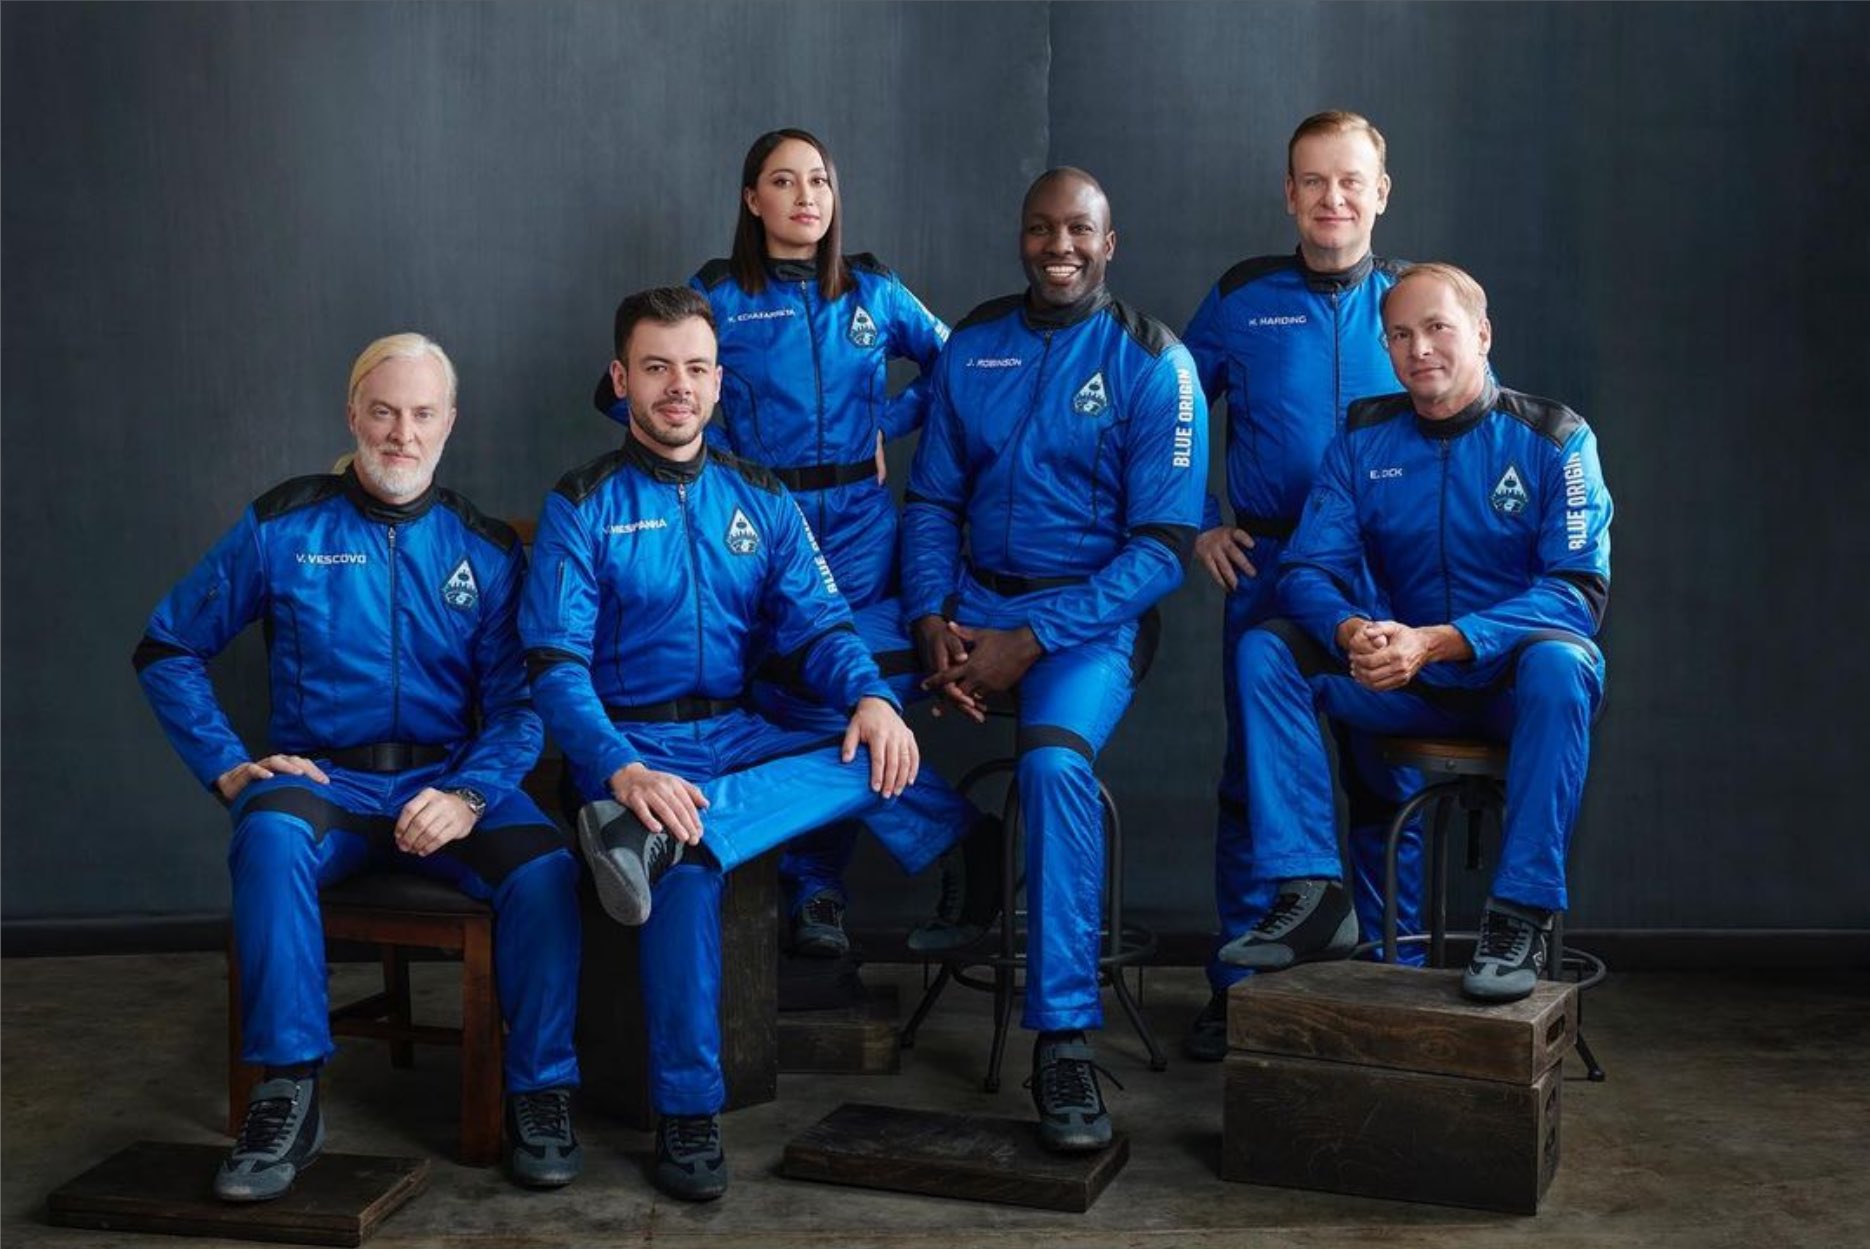 Katya Echazarreta là người phụ nữ duy nhất trong chuyến bay lên vũ trụ lần này - Ảnh: Katya Echazarreta/Twitter